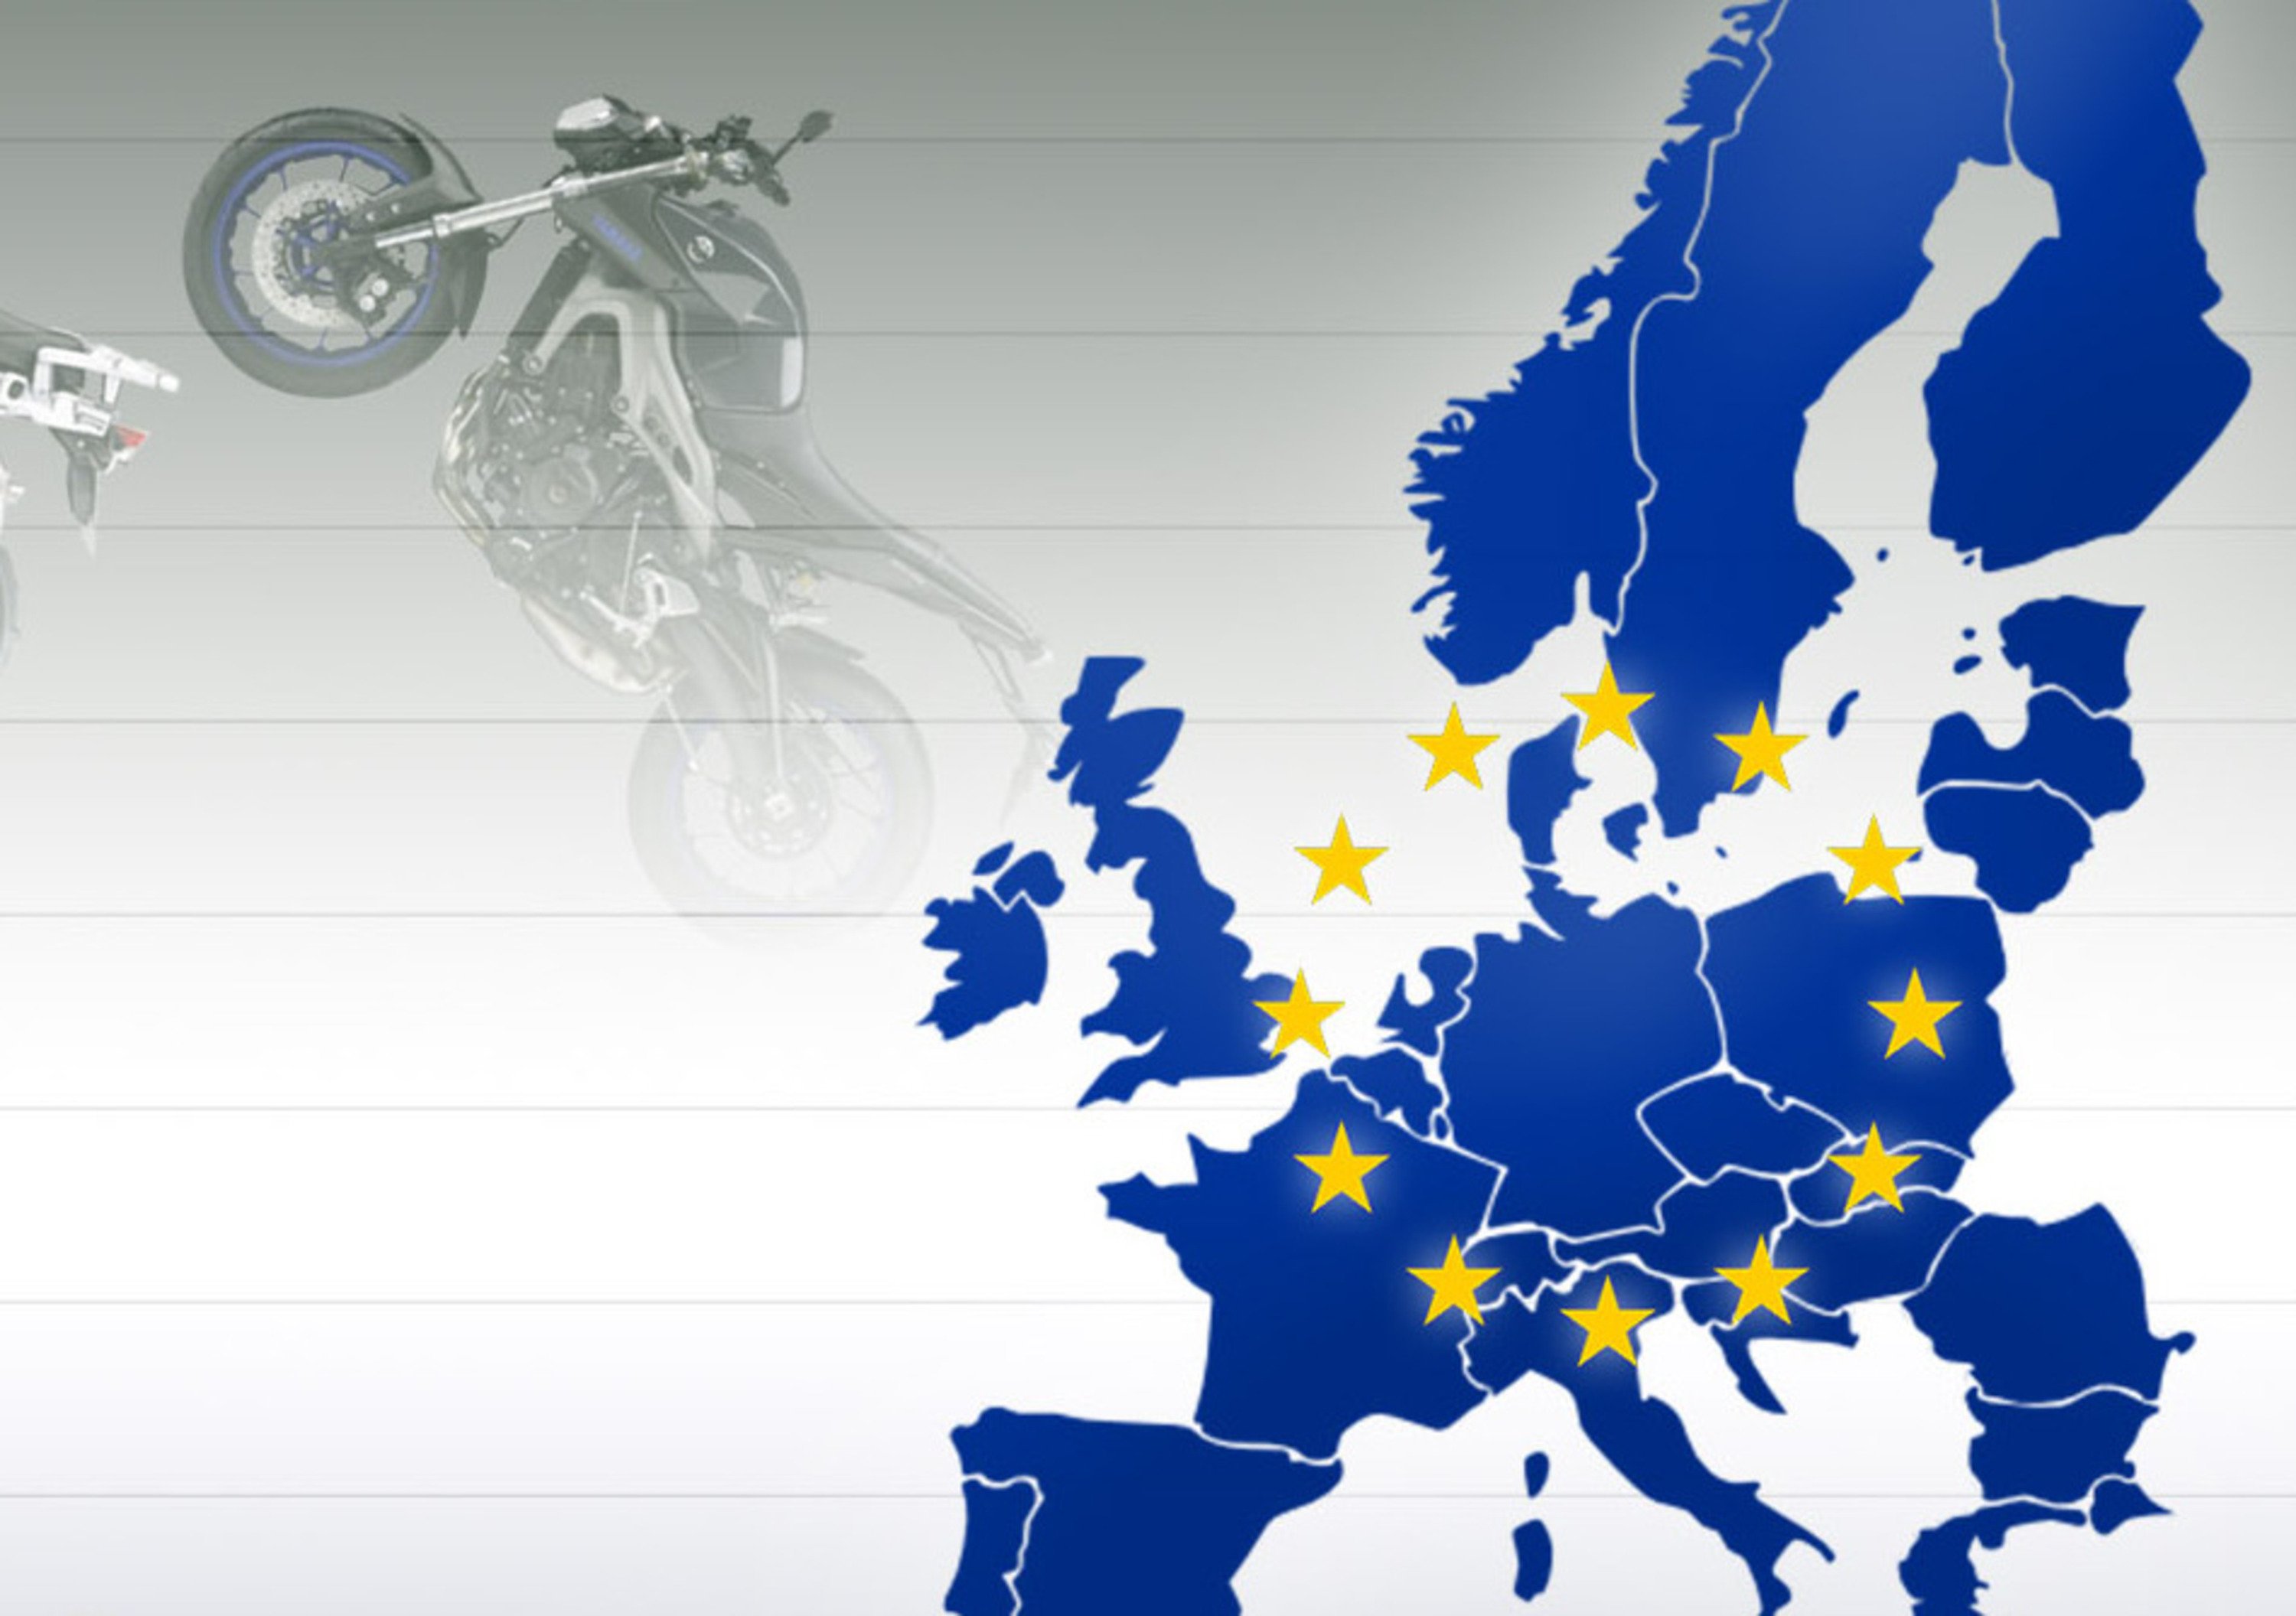 Dazi doganali del 100% per le moto europee in USA